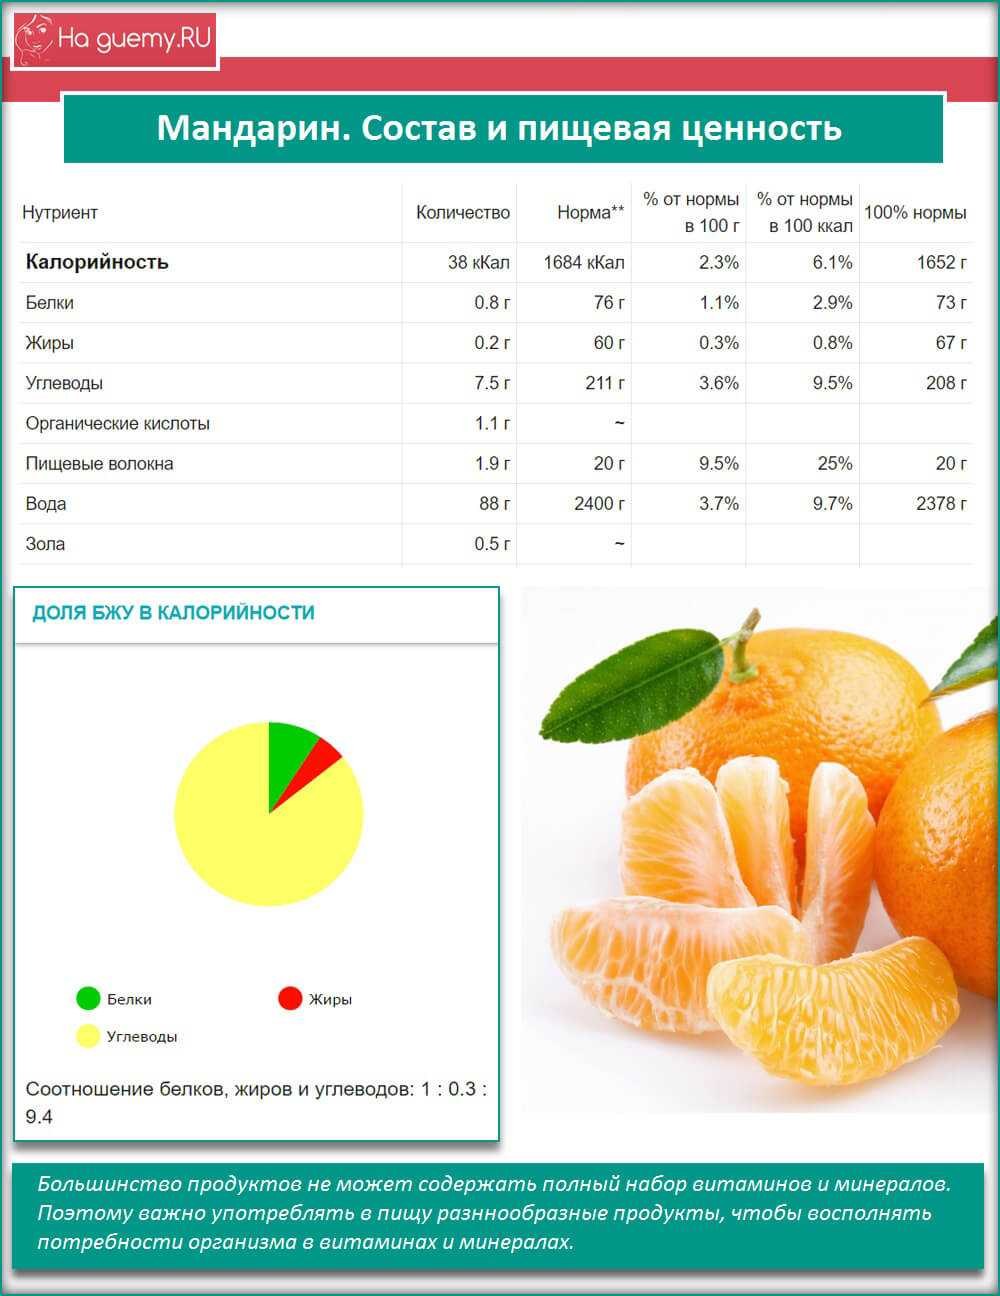 Мандарин витамины содержит. Мандарин состав на 100 грамм витамины. Пищевая ценность мандарина в 100 граммах. Мандарин калорийность на 100 грамм. Энергетическая ценность апельсина в 100 граммах.